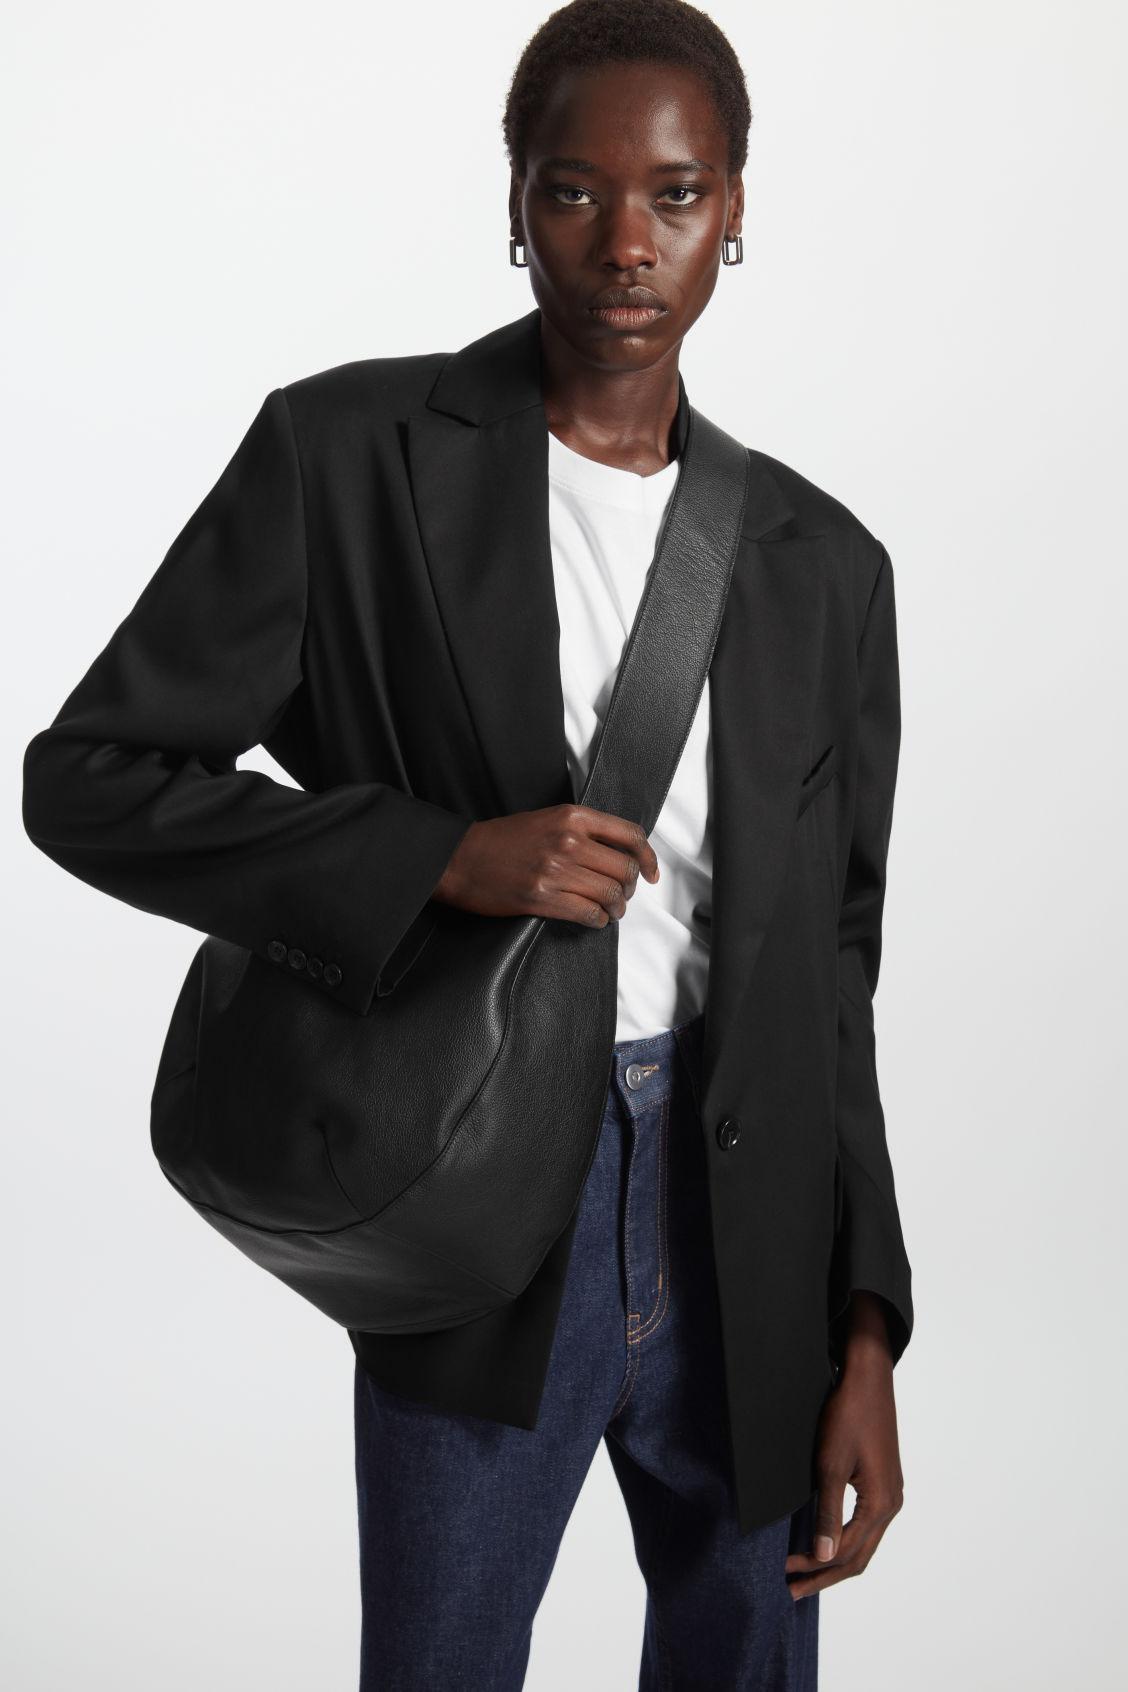 COS Curved Leather Shoulder Bag in Black | Lyst